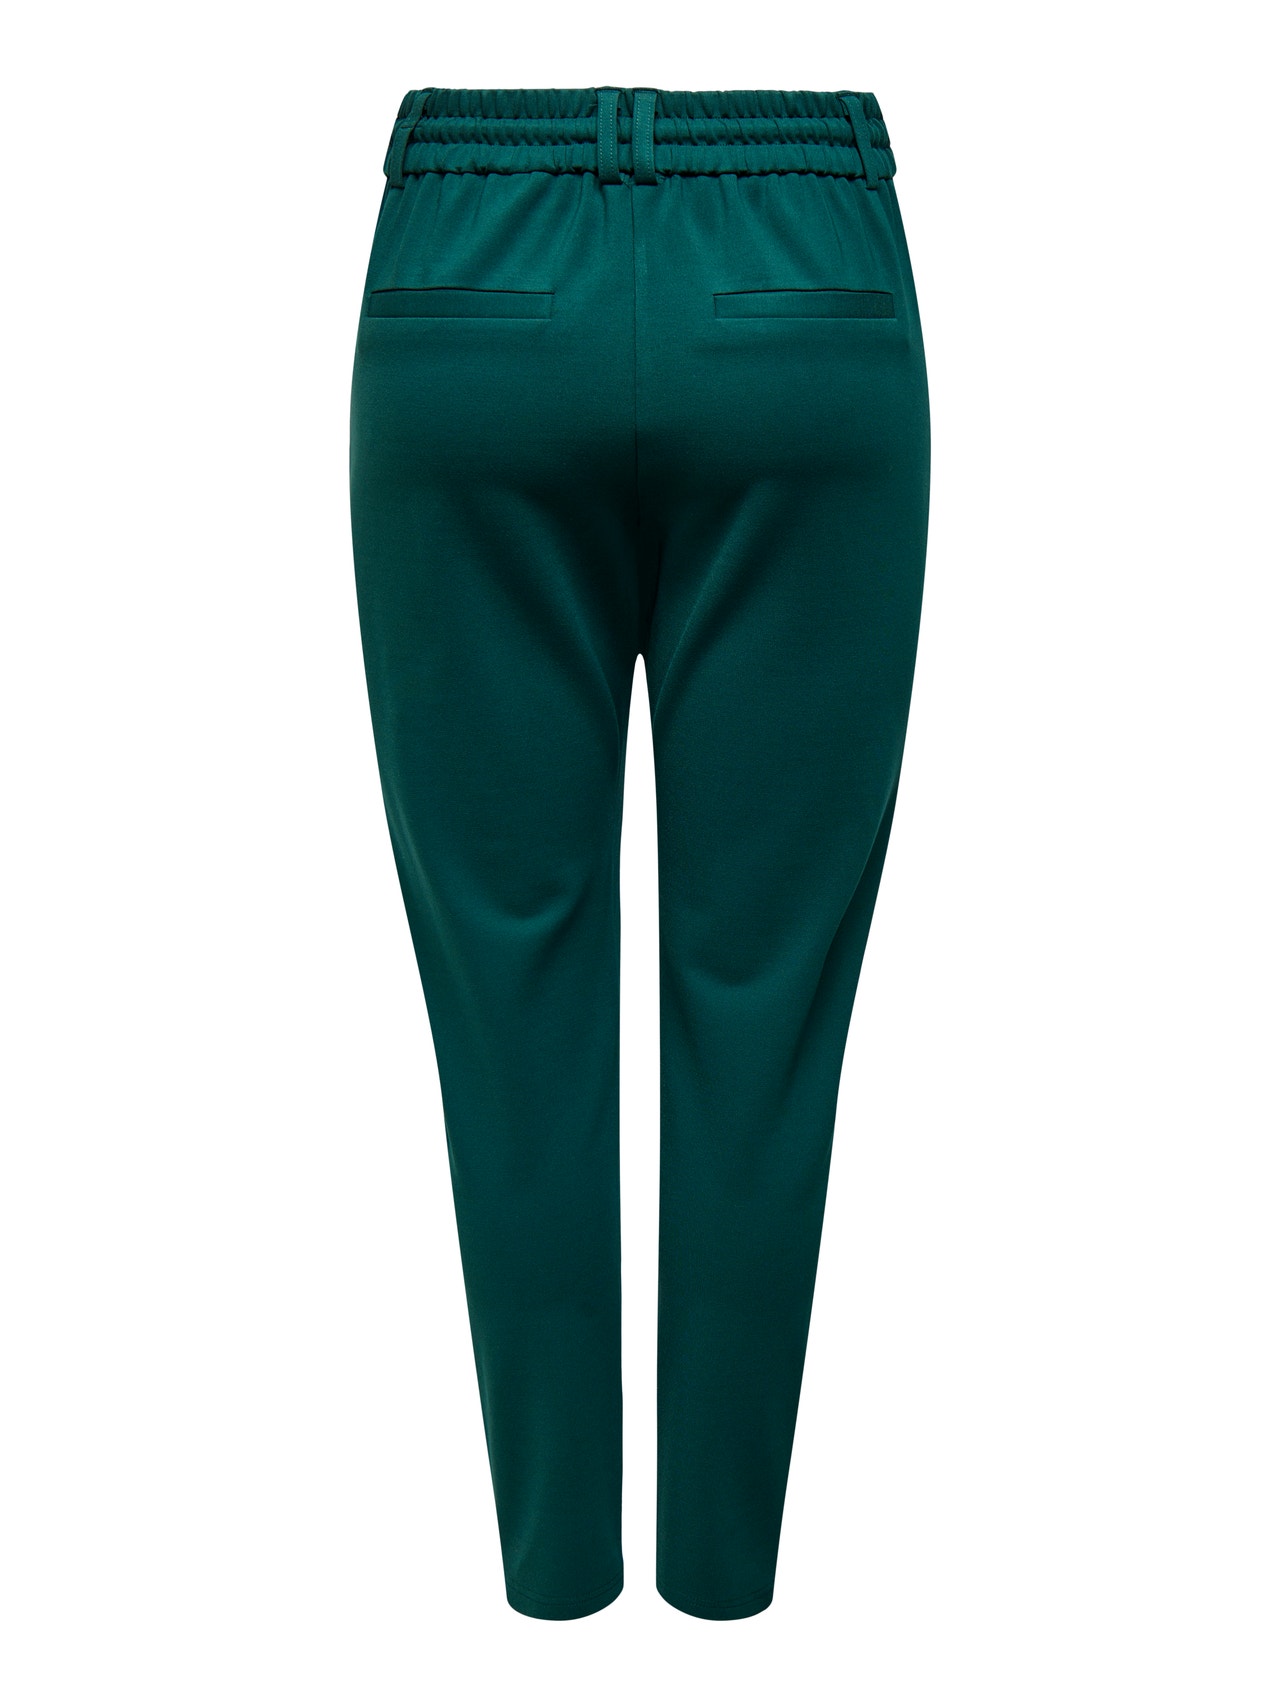 ONLY Uni Pantalon -Green Gables - 15115847